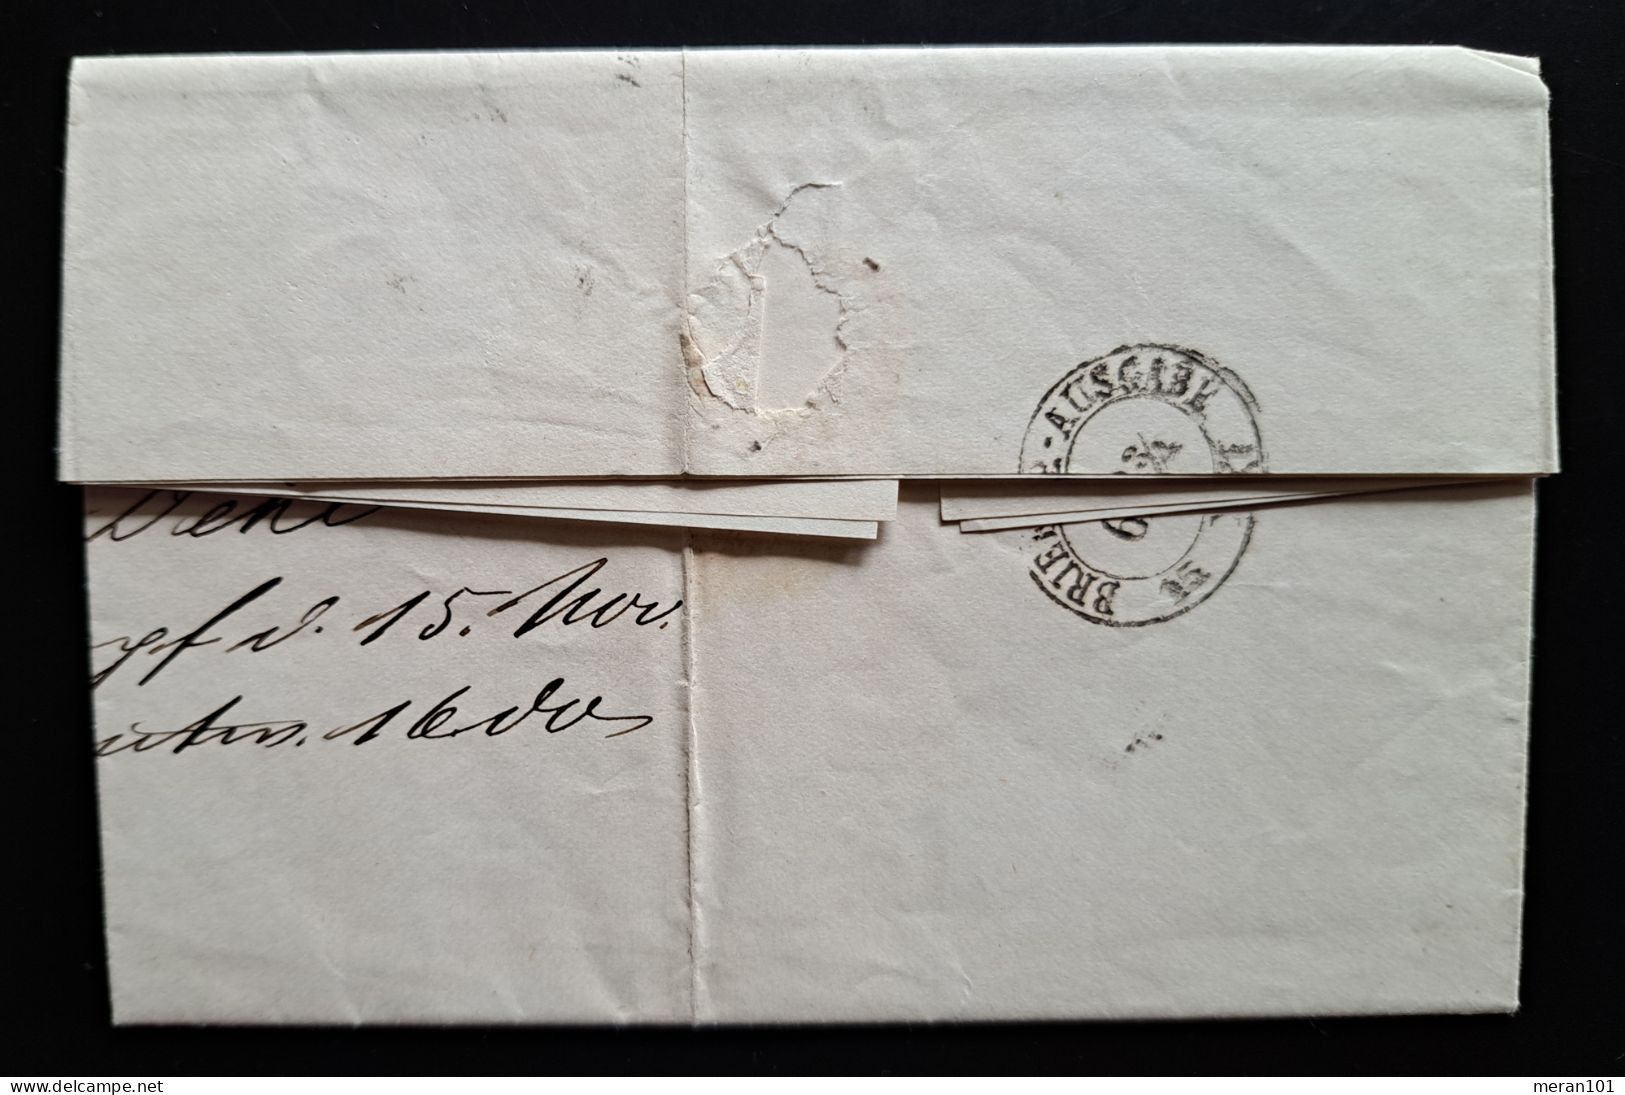 Preussen 1867, Brief Mit Inhalt NAZZA Nach Dresden, Mi 18b - Briefe U. Dokumente